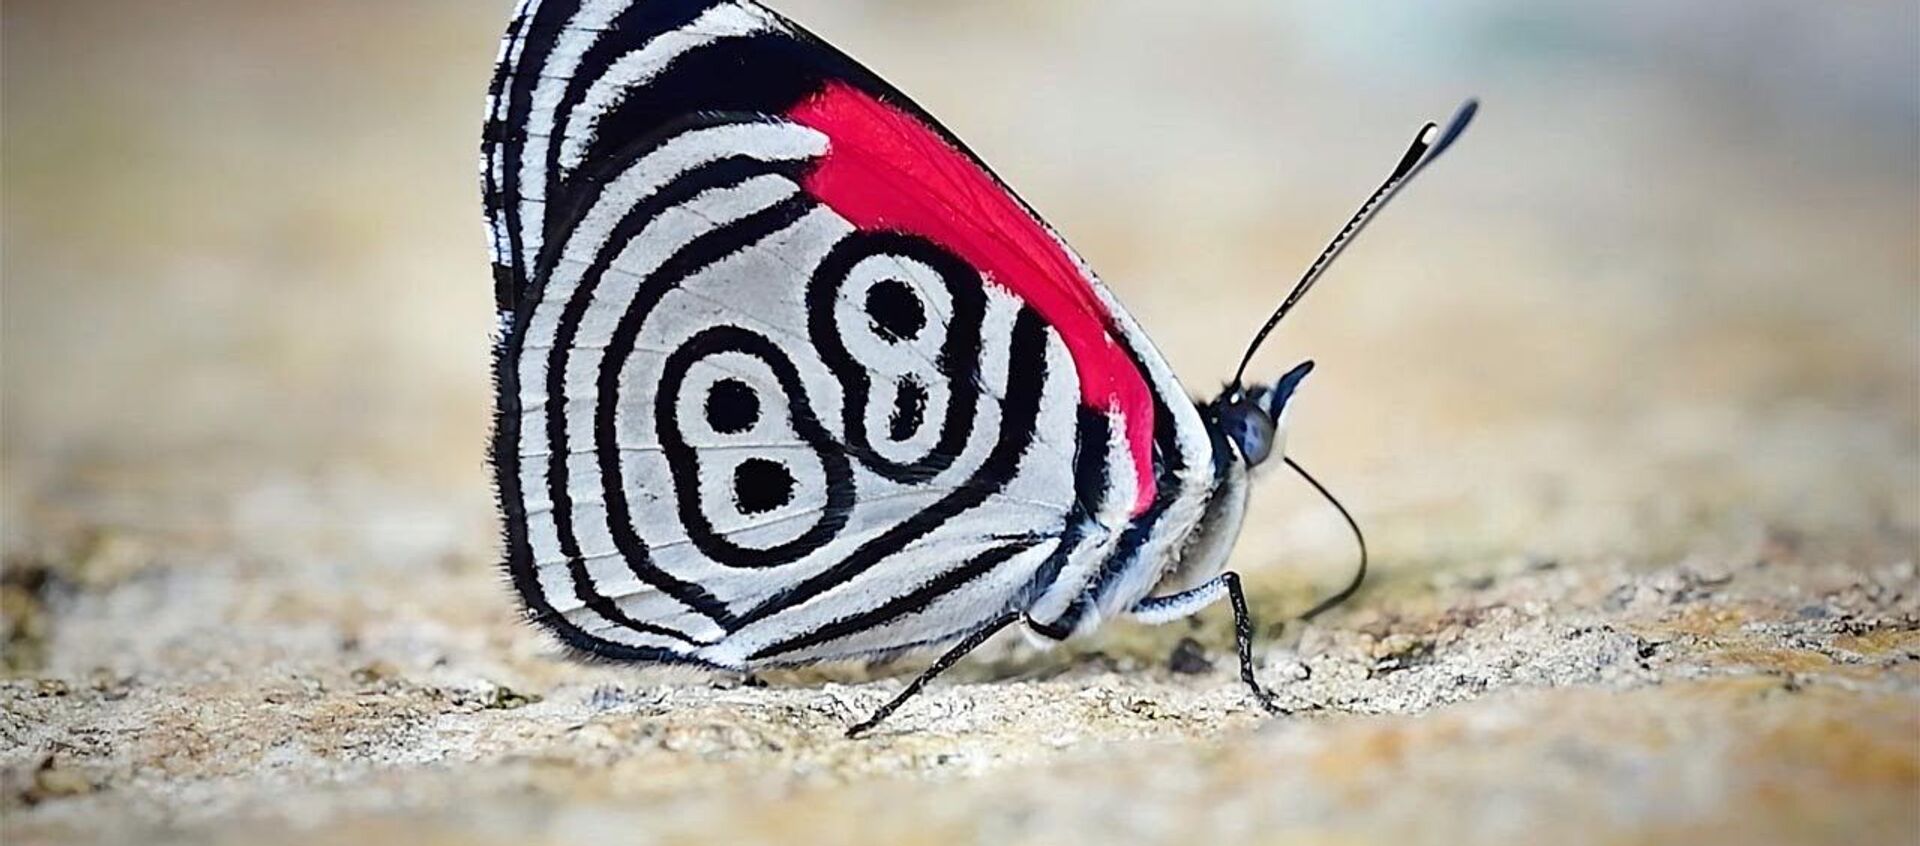 Крылья бабочки украшает цифра 88 — на видео попало необычное насекомое - Sputnik Кыргызстан, 1920, 29.04.2021